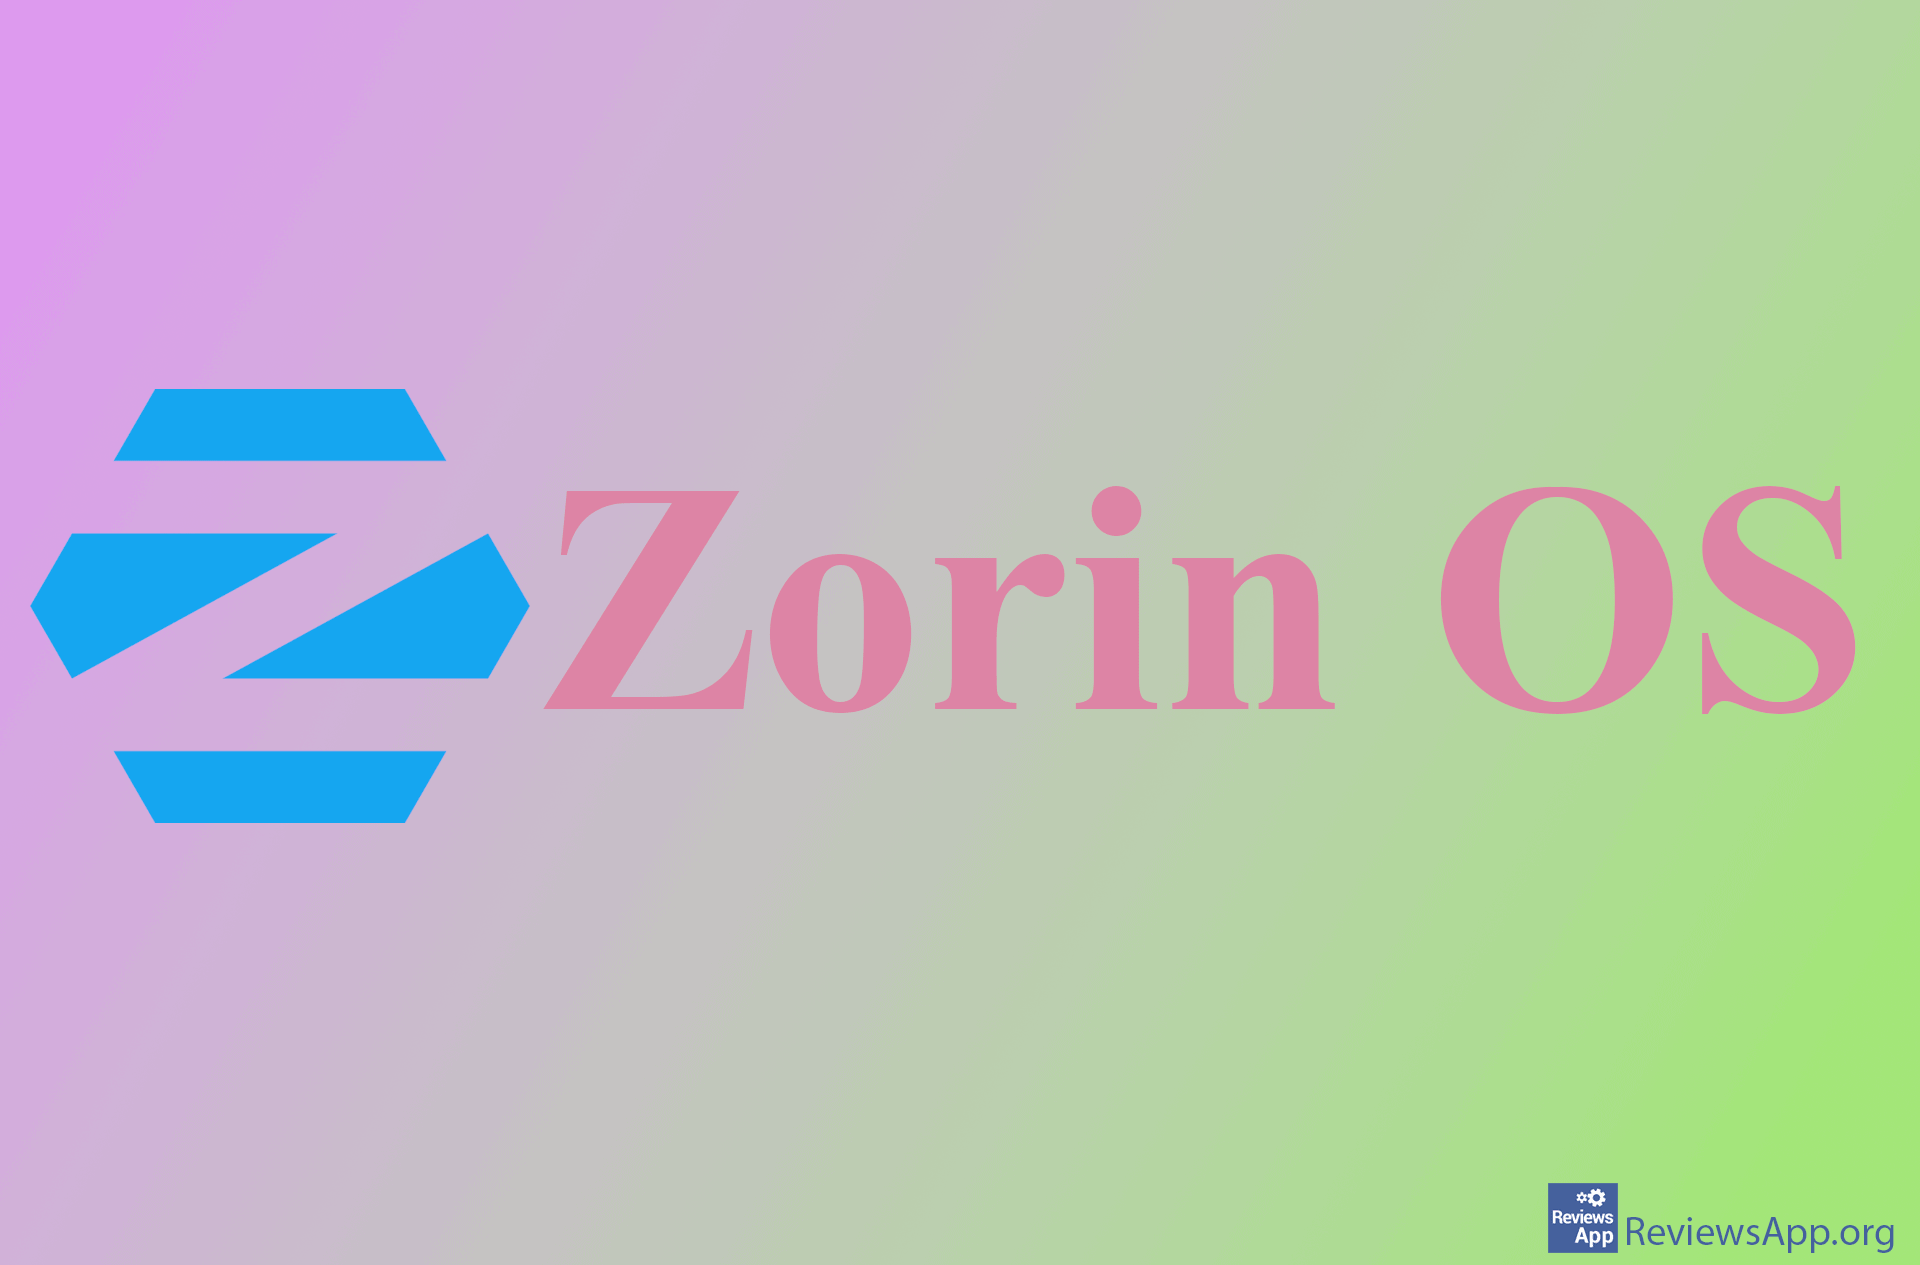 Zorin OS